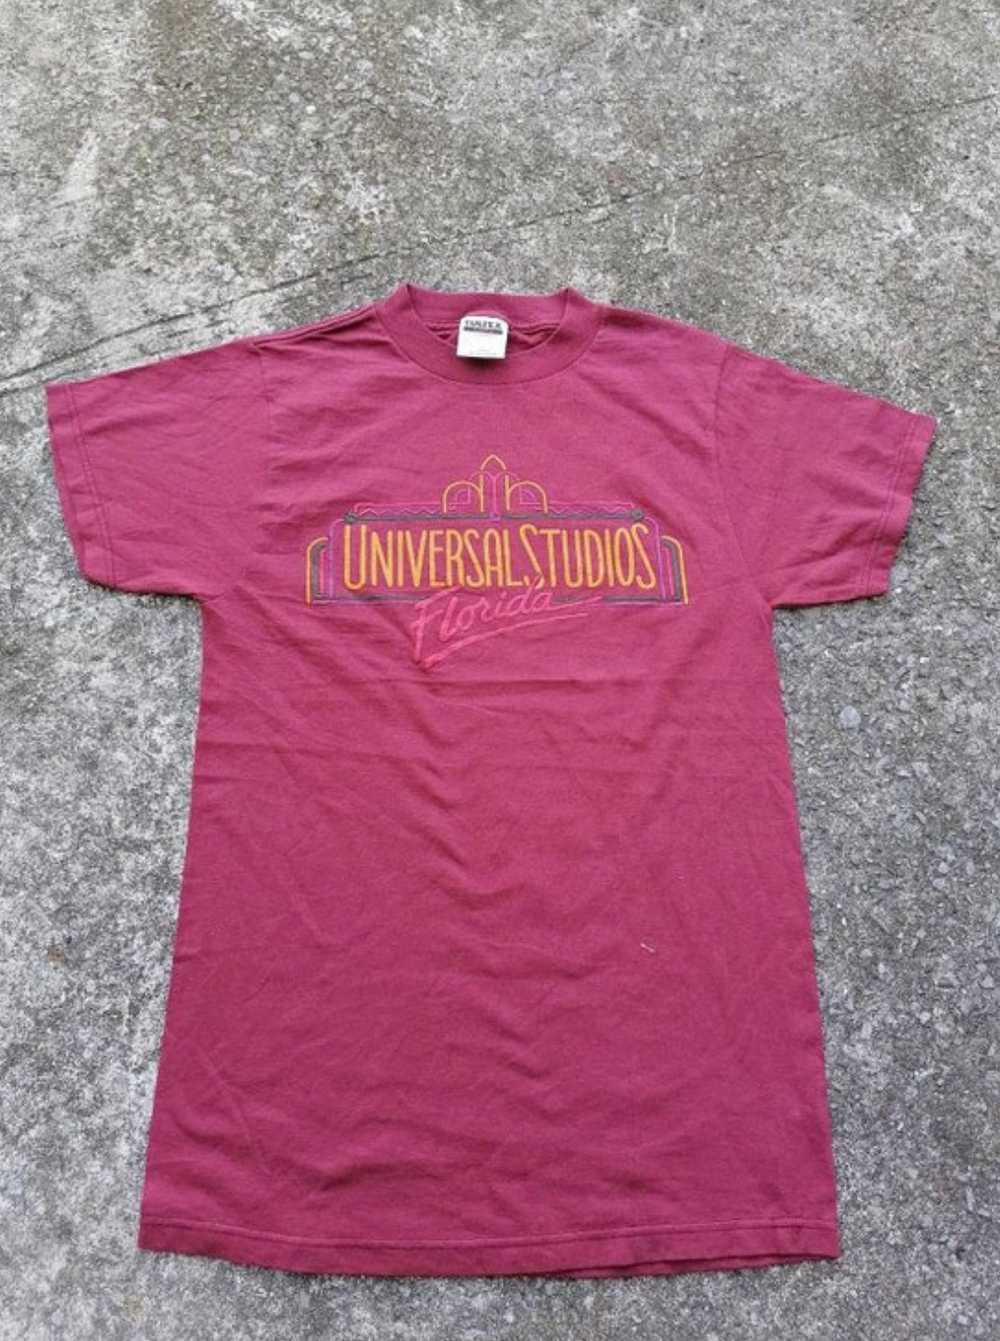 Universal Studios Florida TULTEX Tee - image 1